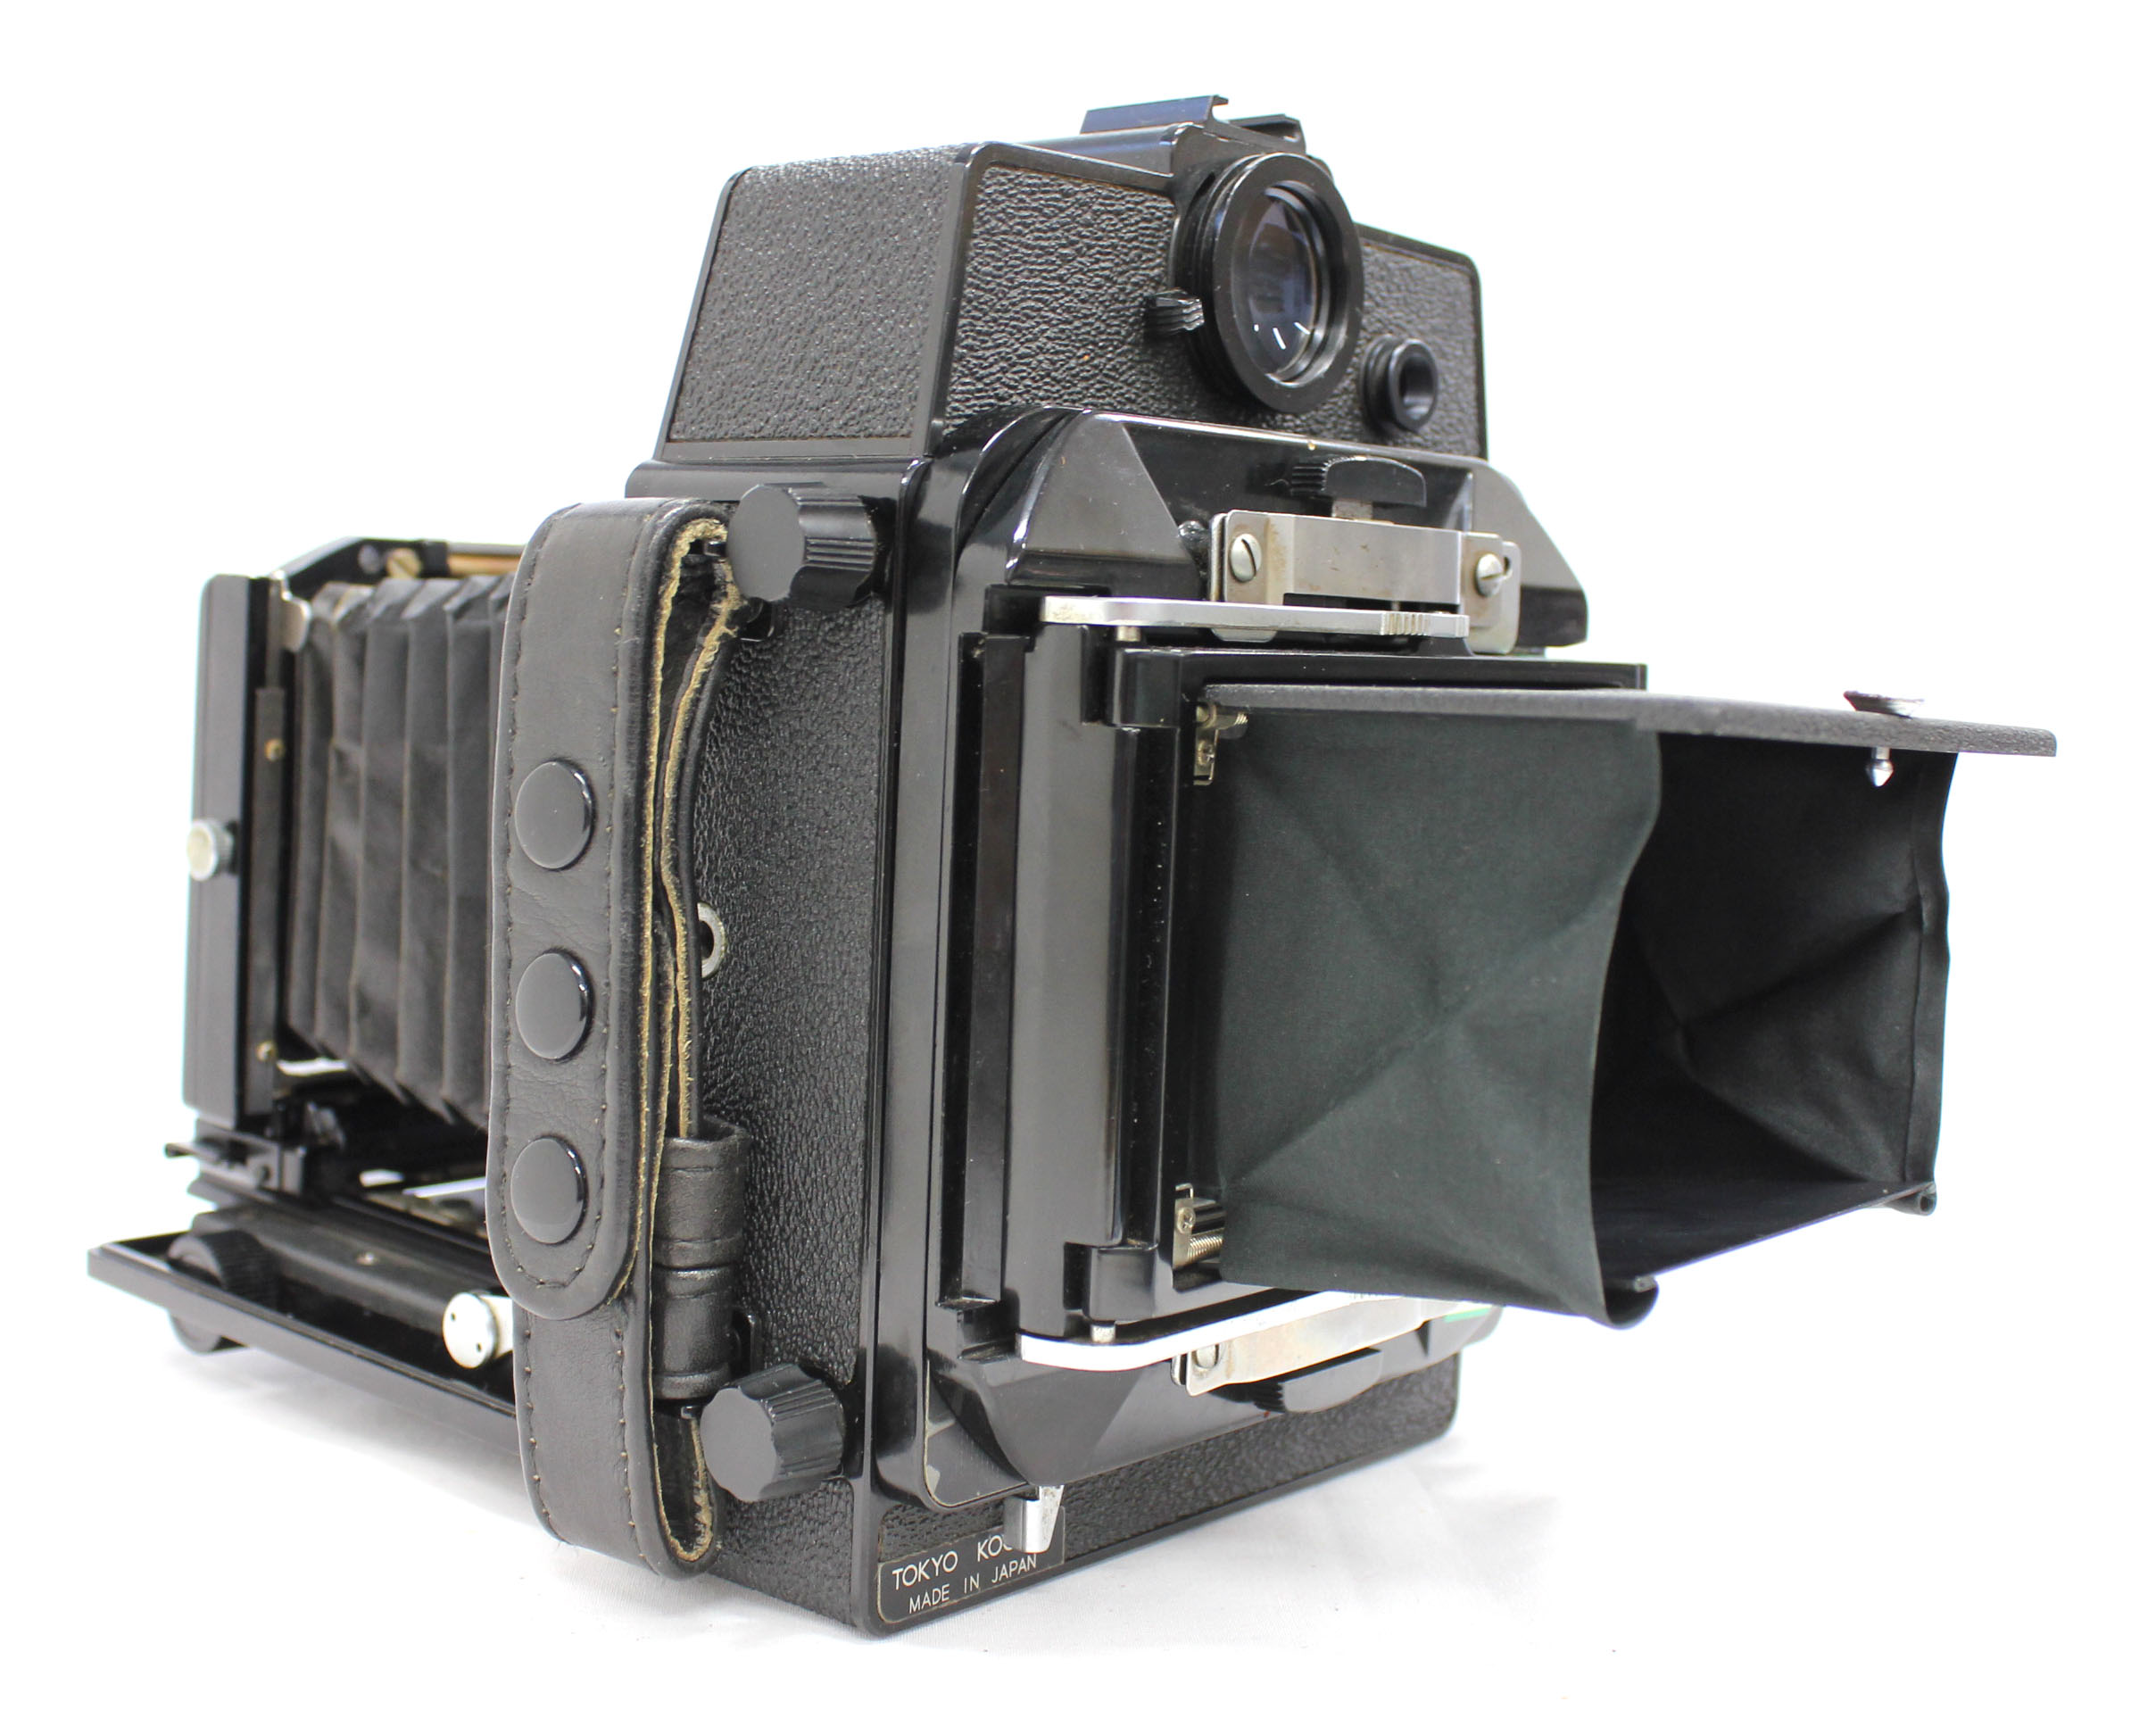 Topcon Horseman VH-R with Super Horseman 90mm F/5.6 Lens from Japan (C1998)  | Big Fish J-Camera (Big Fish J-Shop)